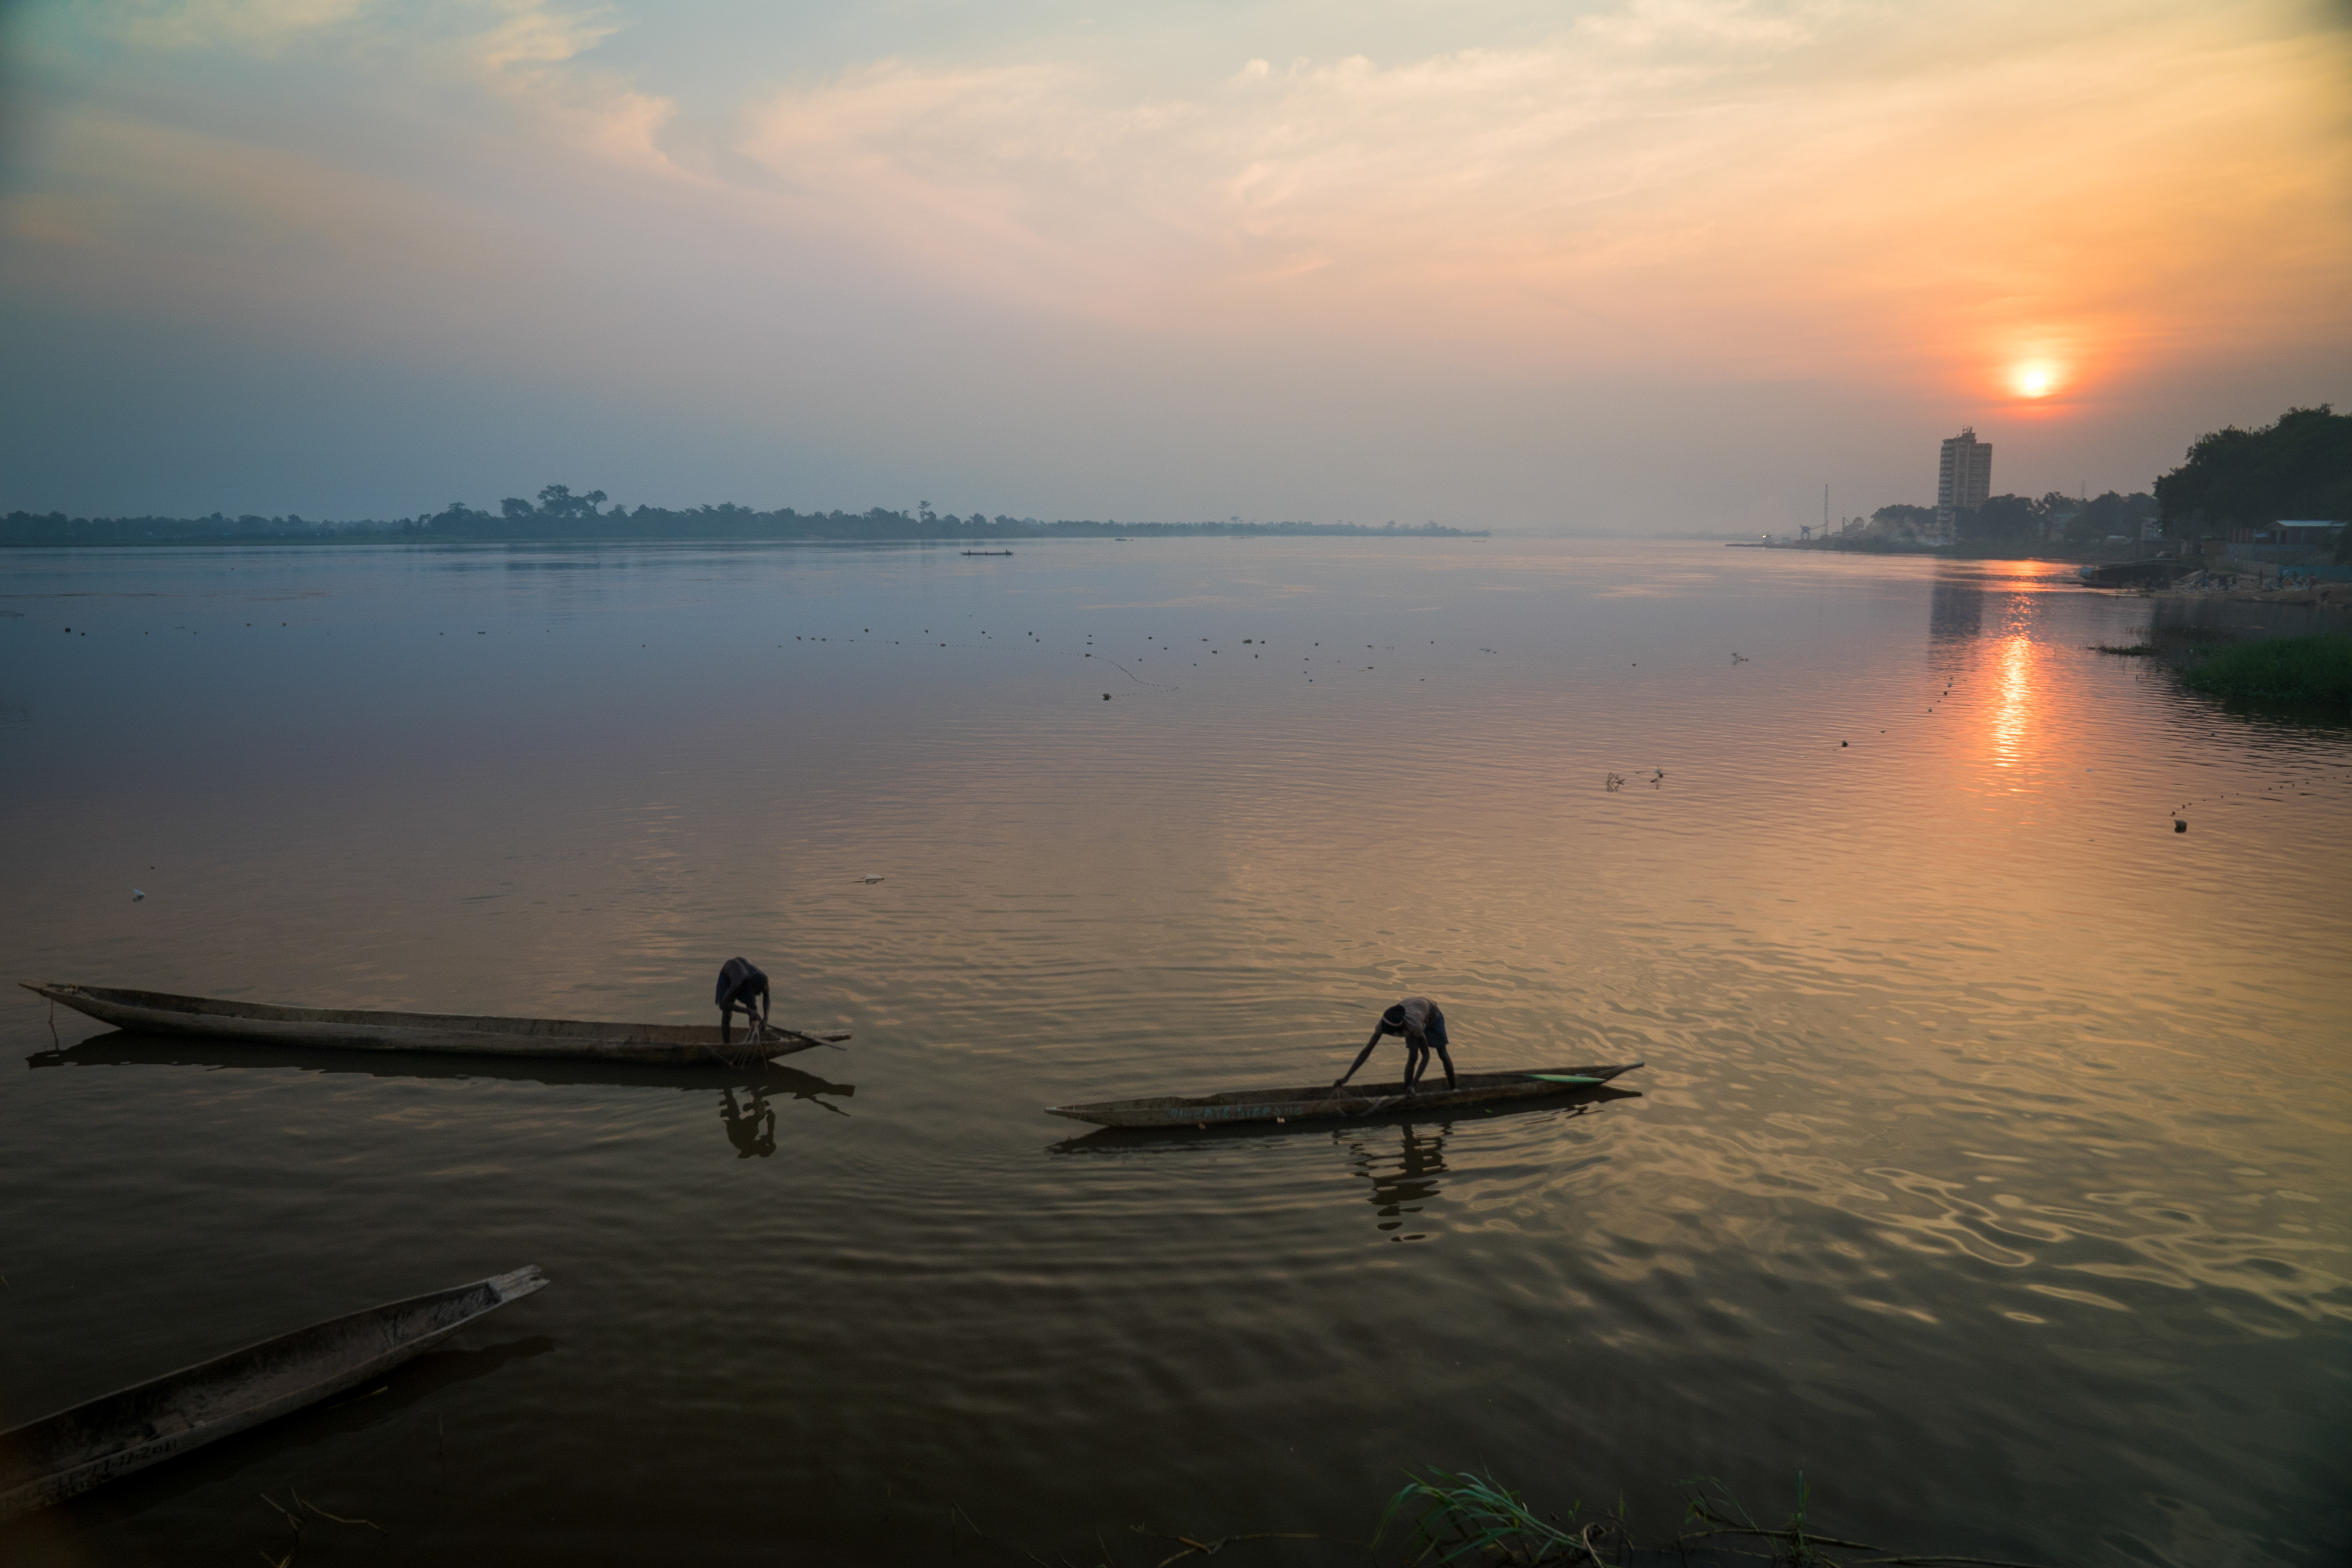  Një pamje e lumit pranë Bangui, kryeqyteti i Republikës së Afrikës Qendrore. Një konflikt i armatosur shumëvjeçar në vend ka prishi jetën dhe zhvendosi qindra mijëra njerëz 